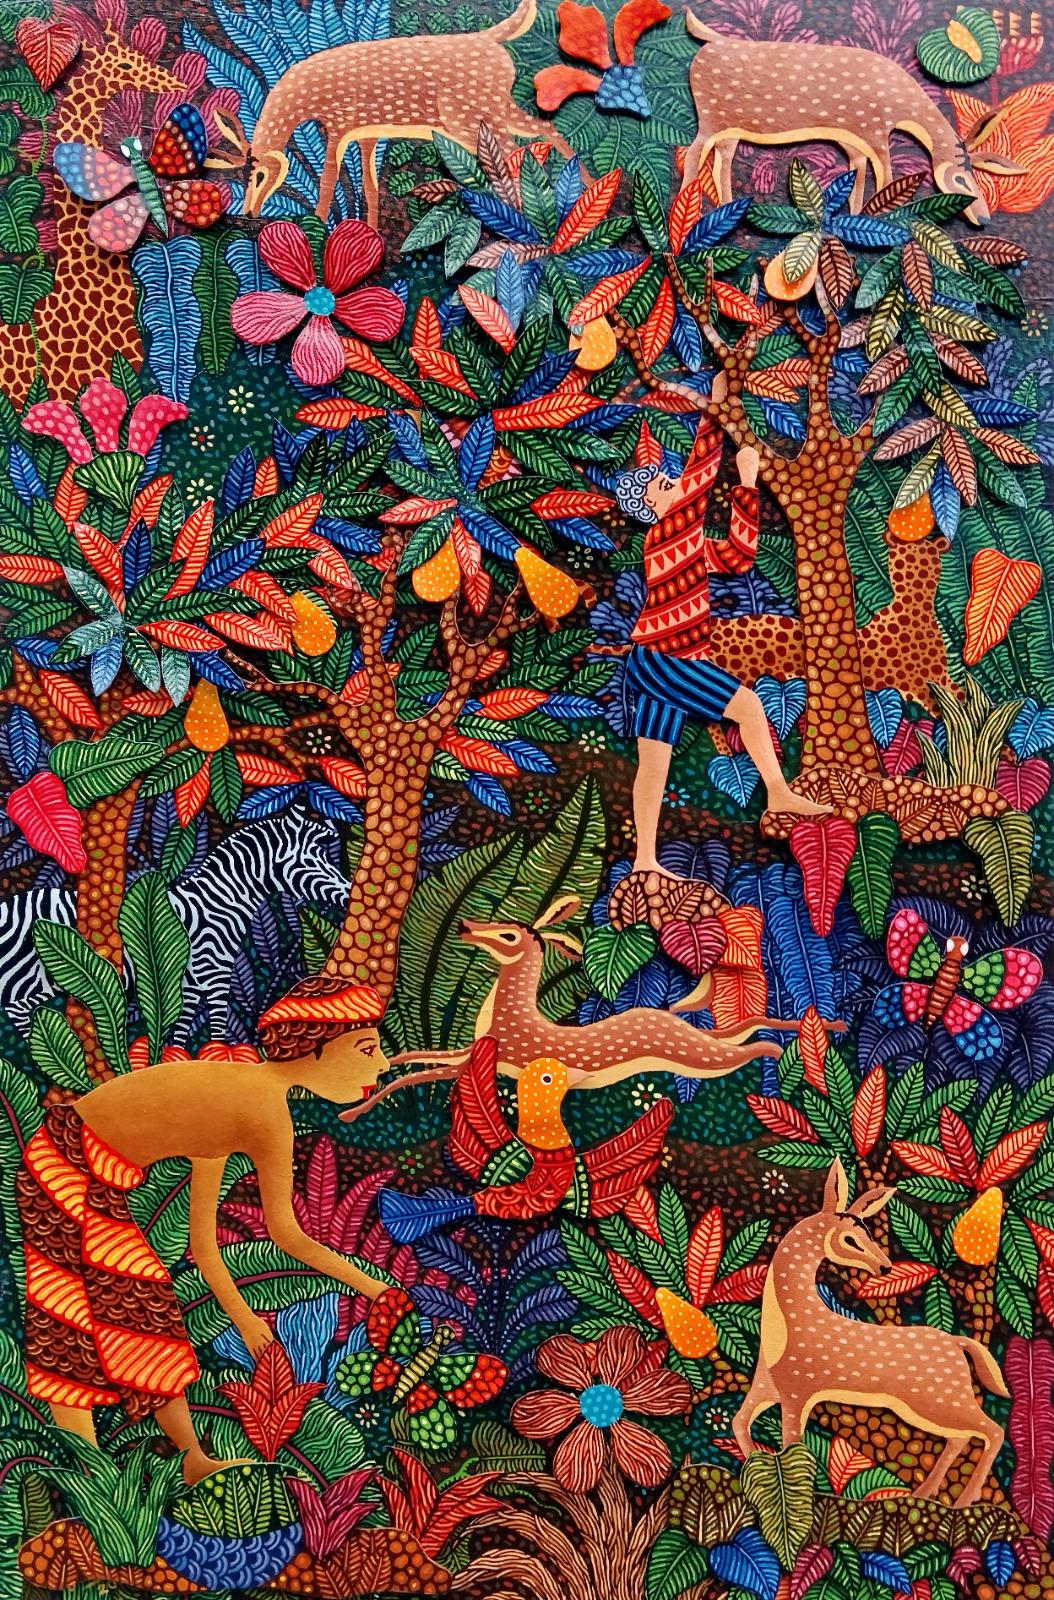 Technique mixte et acrylique sur toile

Kusbudiyanto est un artiste indonésien né en 1969 qui vit et travaille à Jogjakarta, en Indonésie. Il a commencé sa carrière artistique en travaillant pour une entreprise d'exportation d'artisanat et